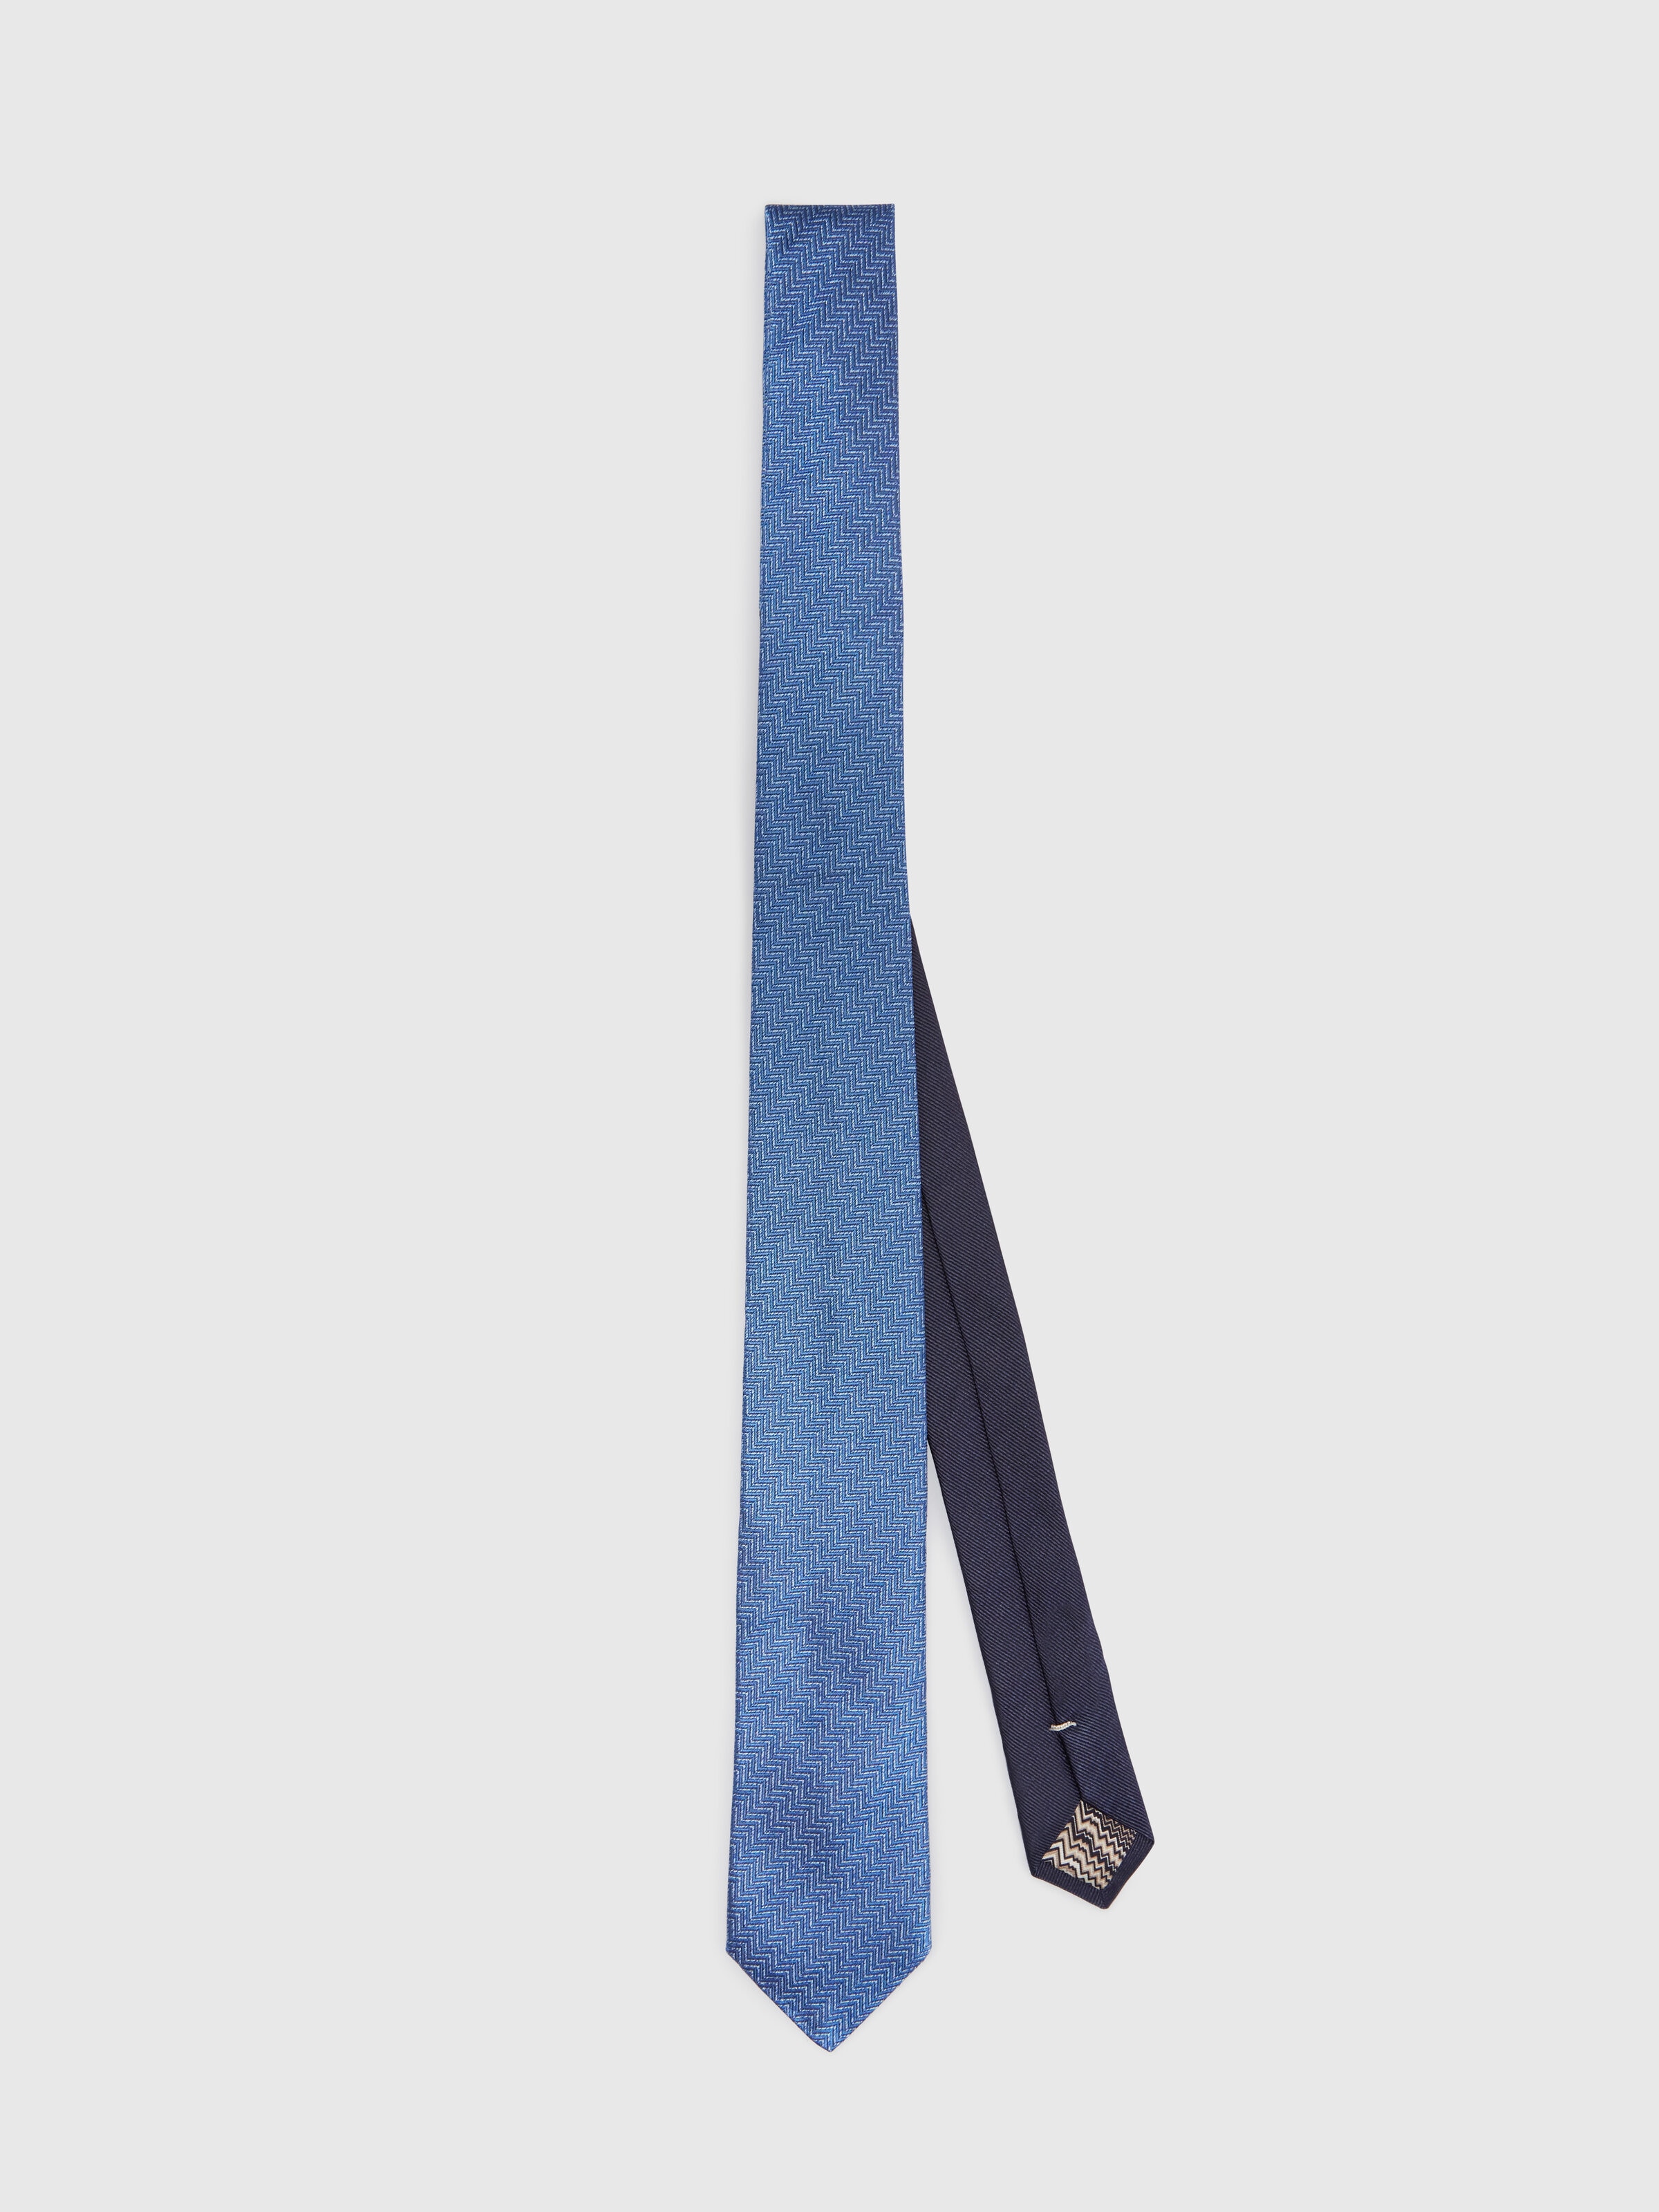 Silk chevron tie, Multicoloured  - 0